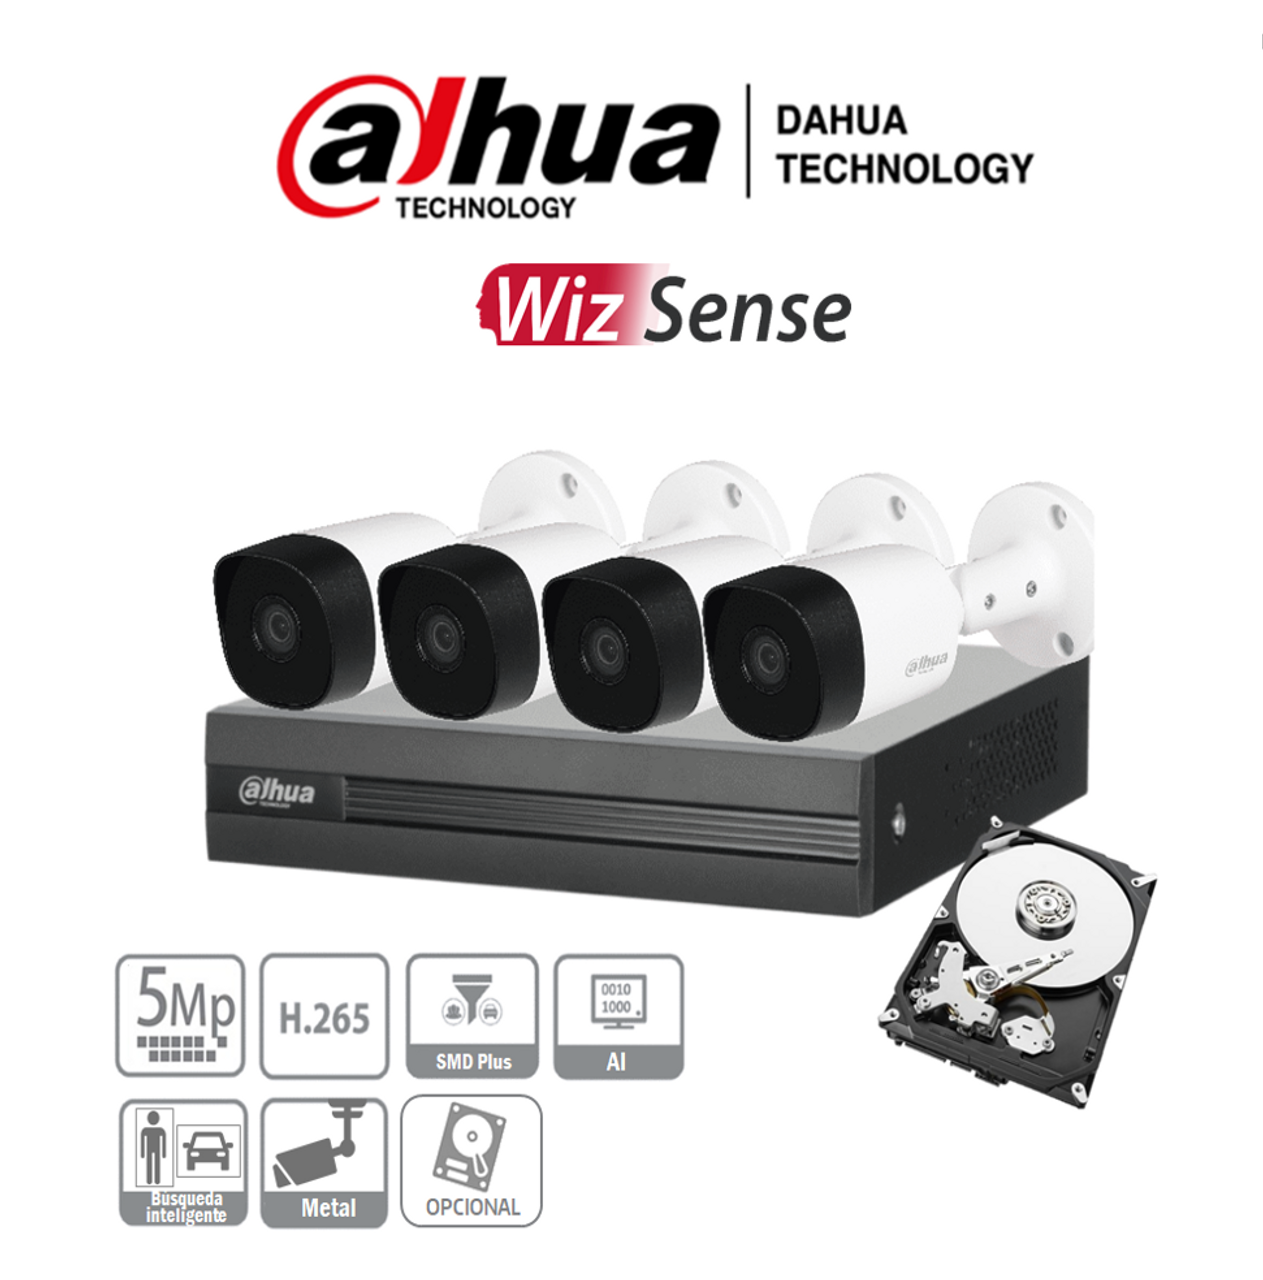 Kit de cámara de vigilancia Full HD, Kit de 4 canales, 1080P, AHD, DVR,  18M, Cable